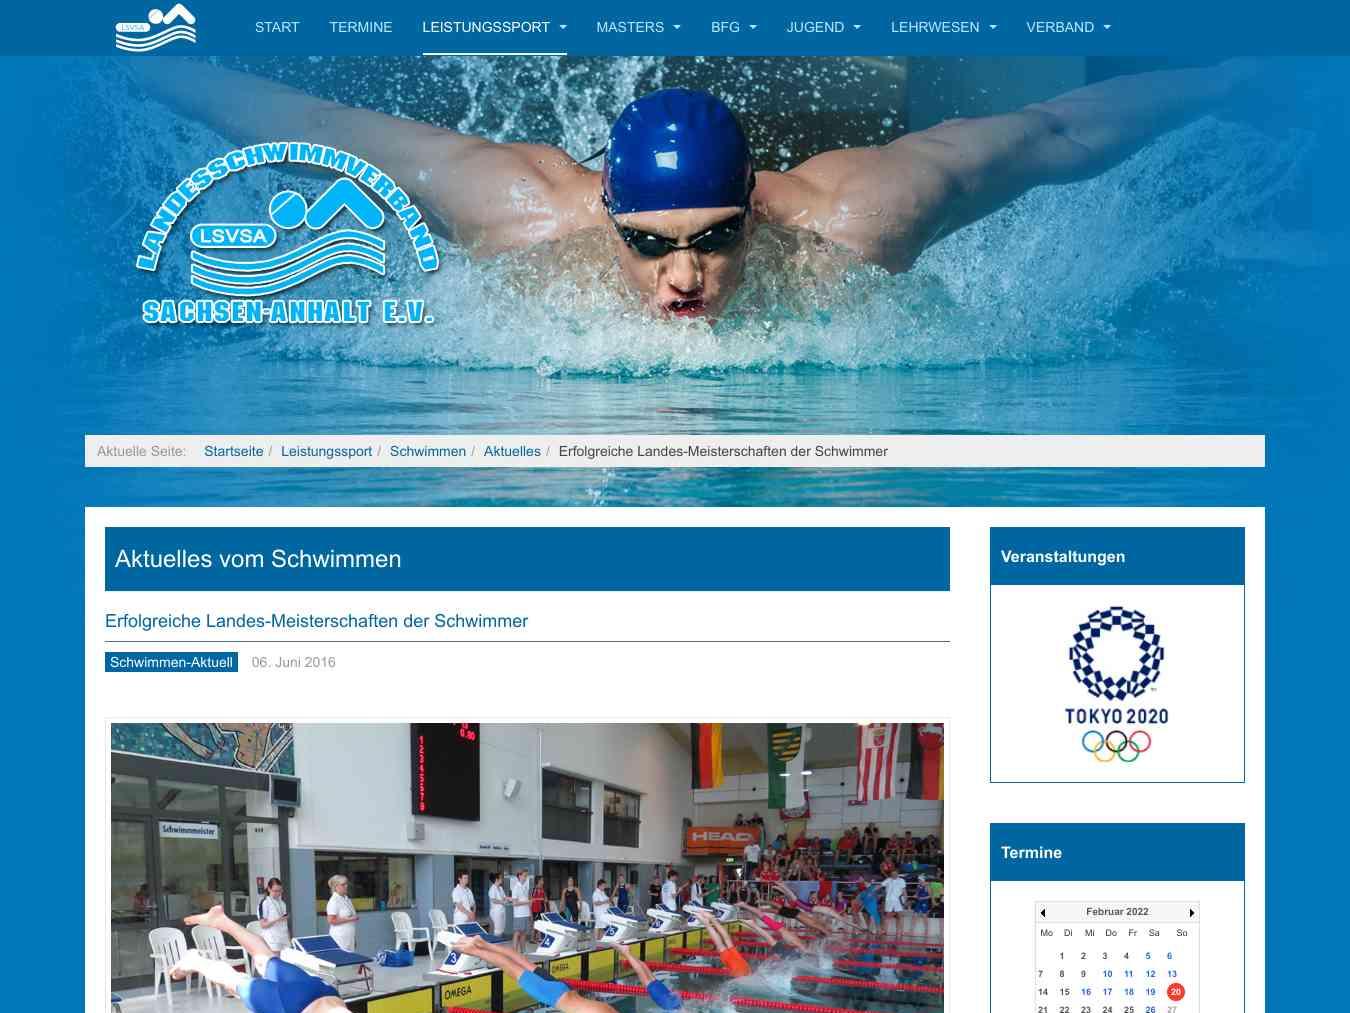 Veranstalterhomepage - http://lsvsa.de/index.php/leistungssport/schwimmen/aktuelles/212-erfolgreiche-landesmeisterschaften-der-schwimmer